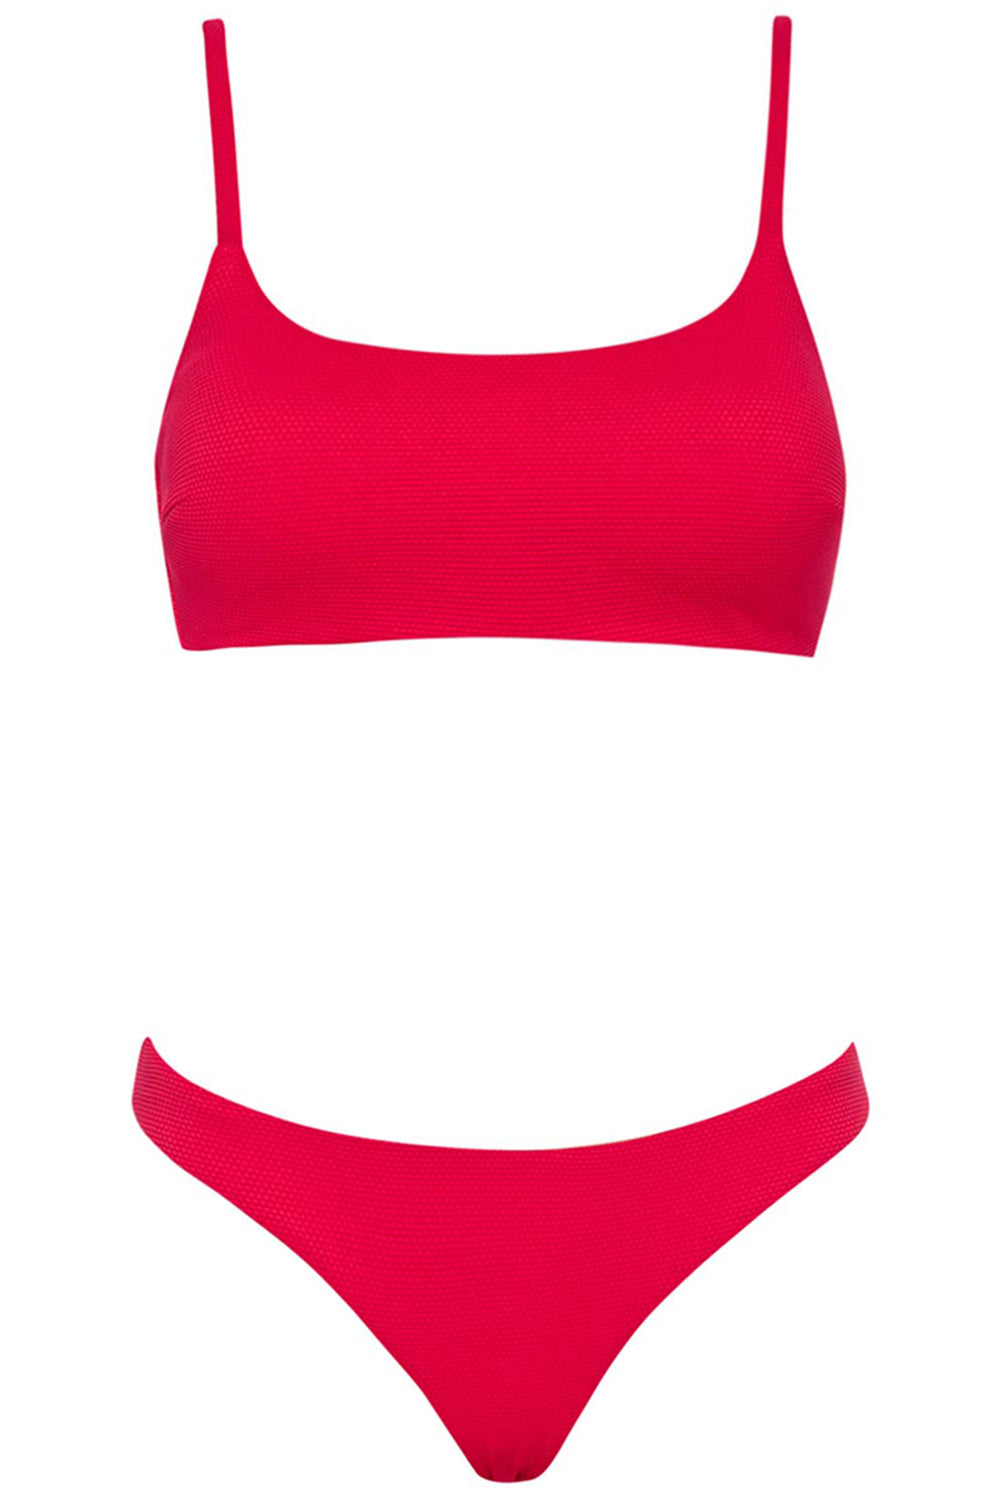 Malibu Bikini Red Set